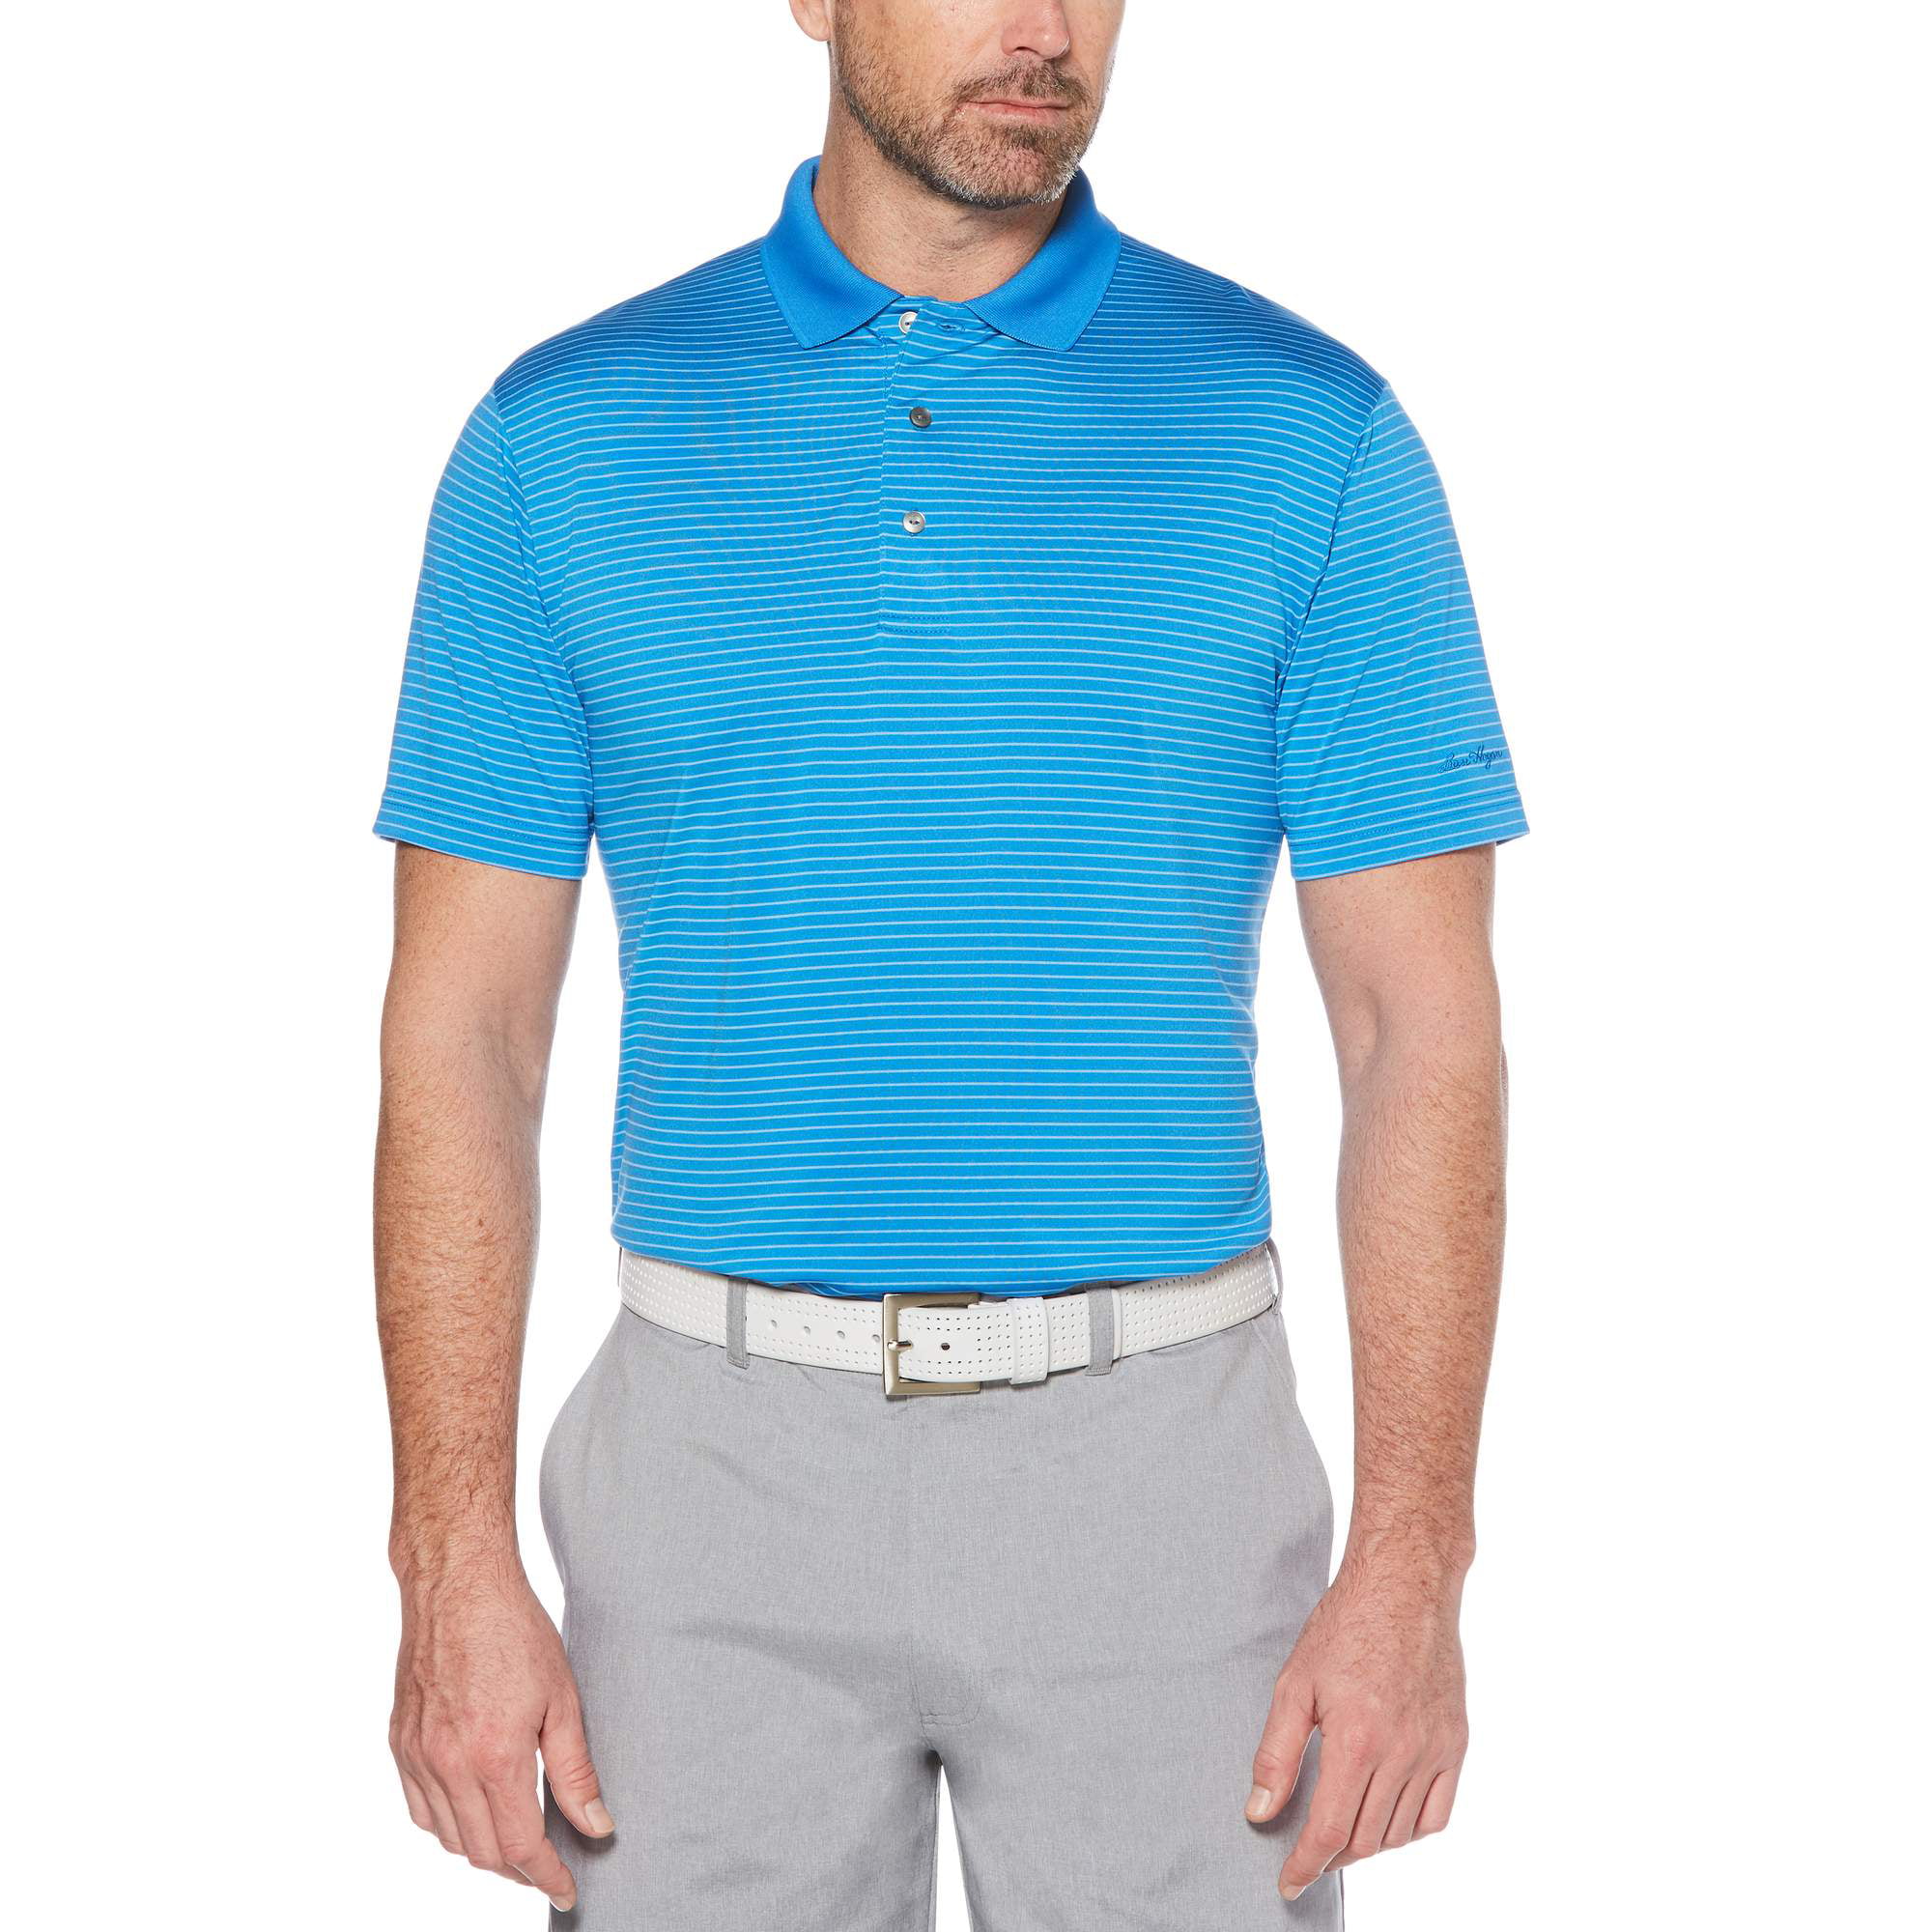 Ben Hogan Men's Performance Short Sleeve Striped Polo Shirt - Walmart.com